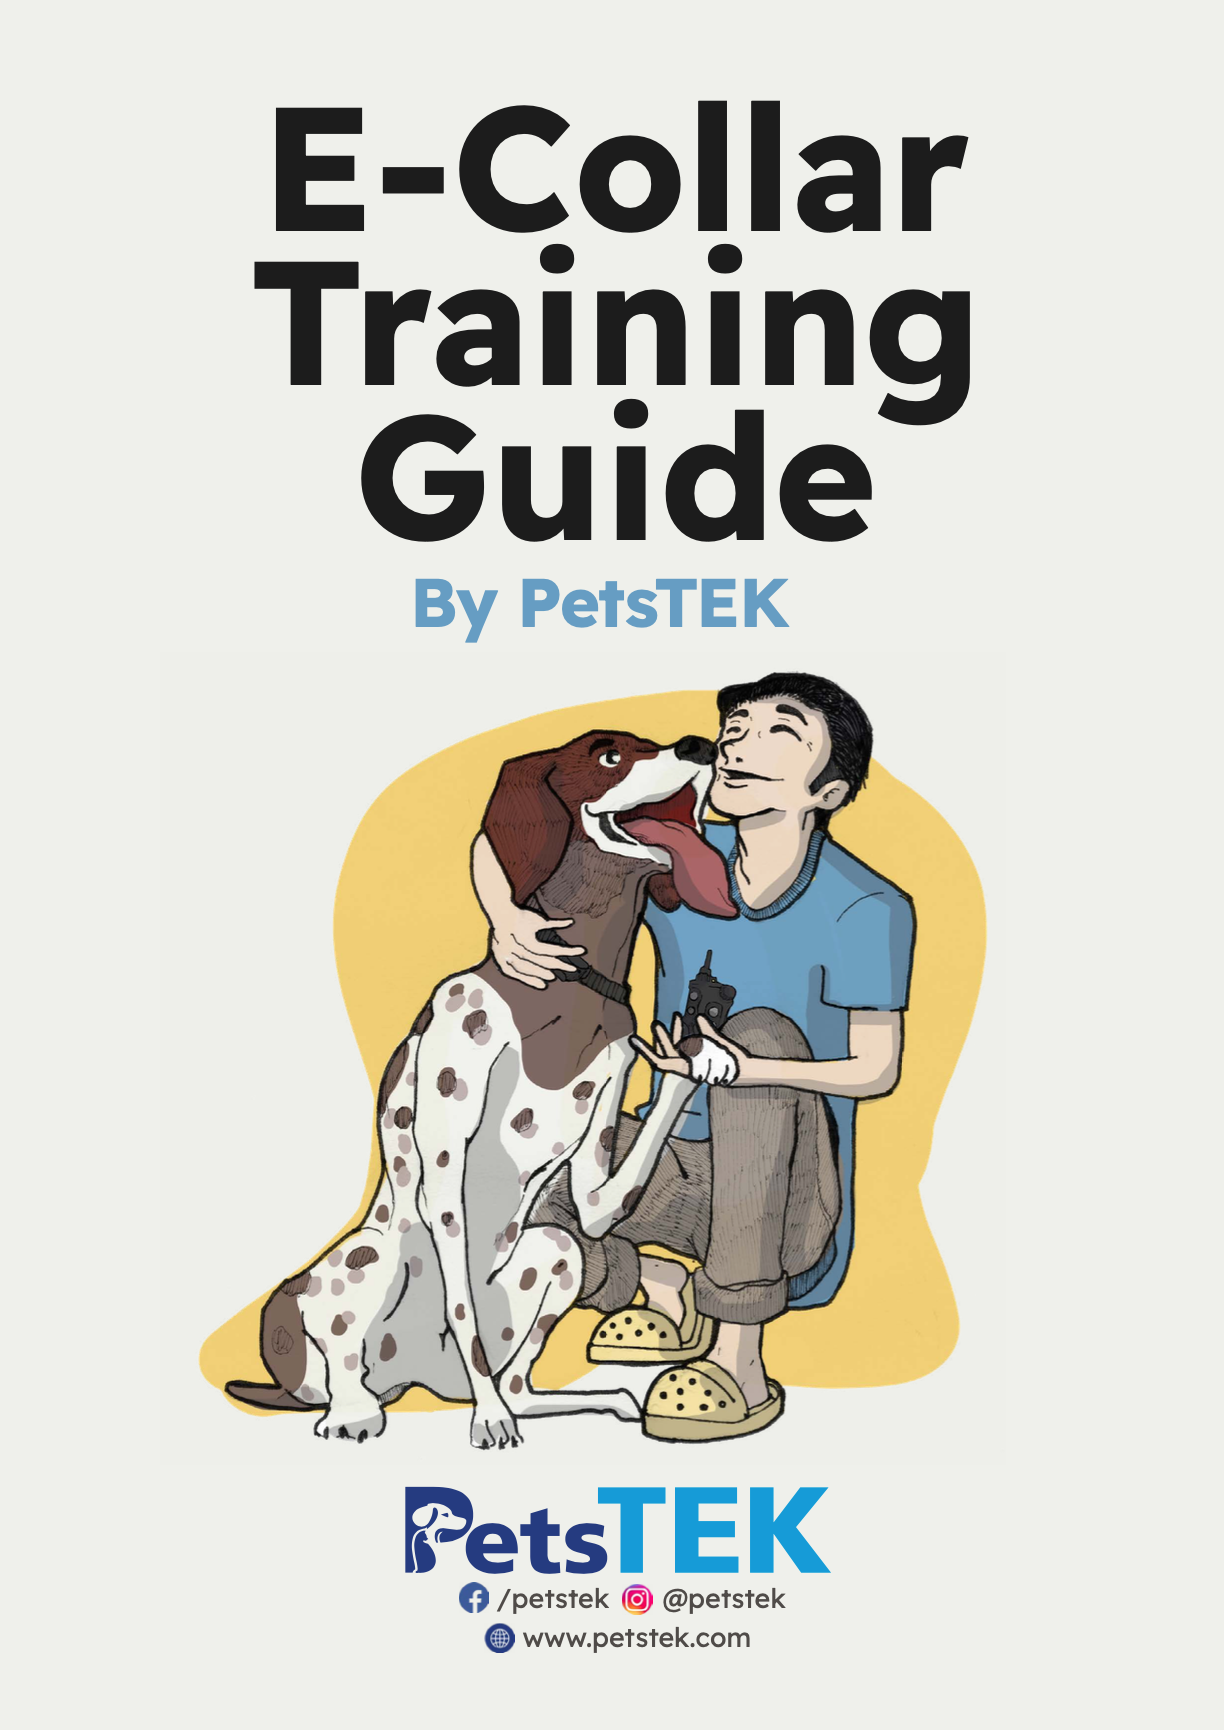 PetsTEK Releases E-Collar Training Guide